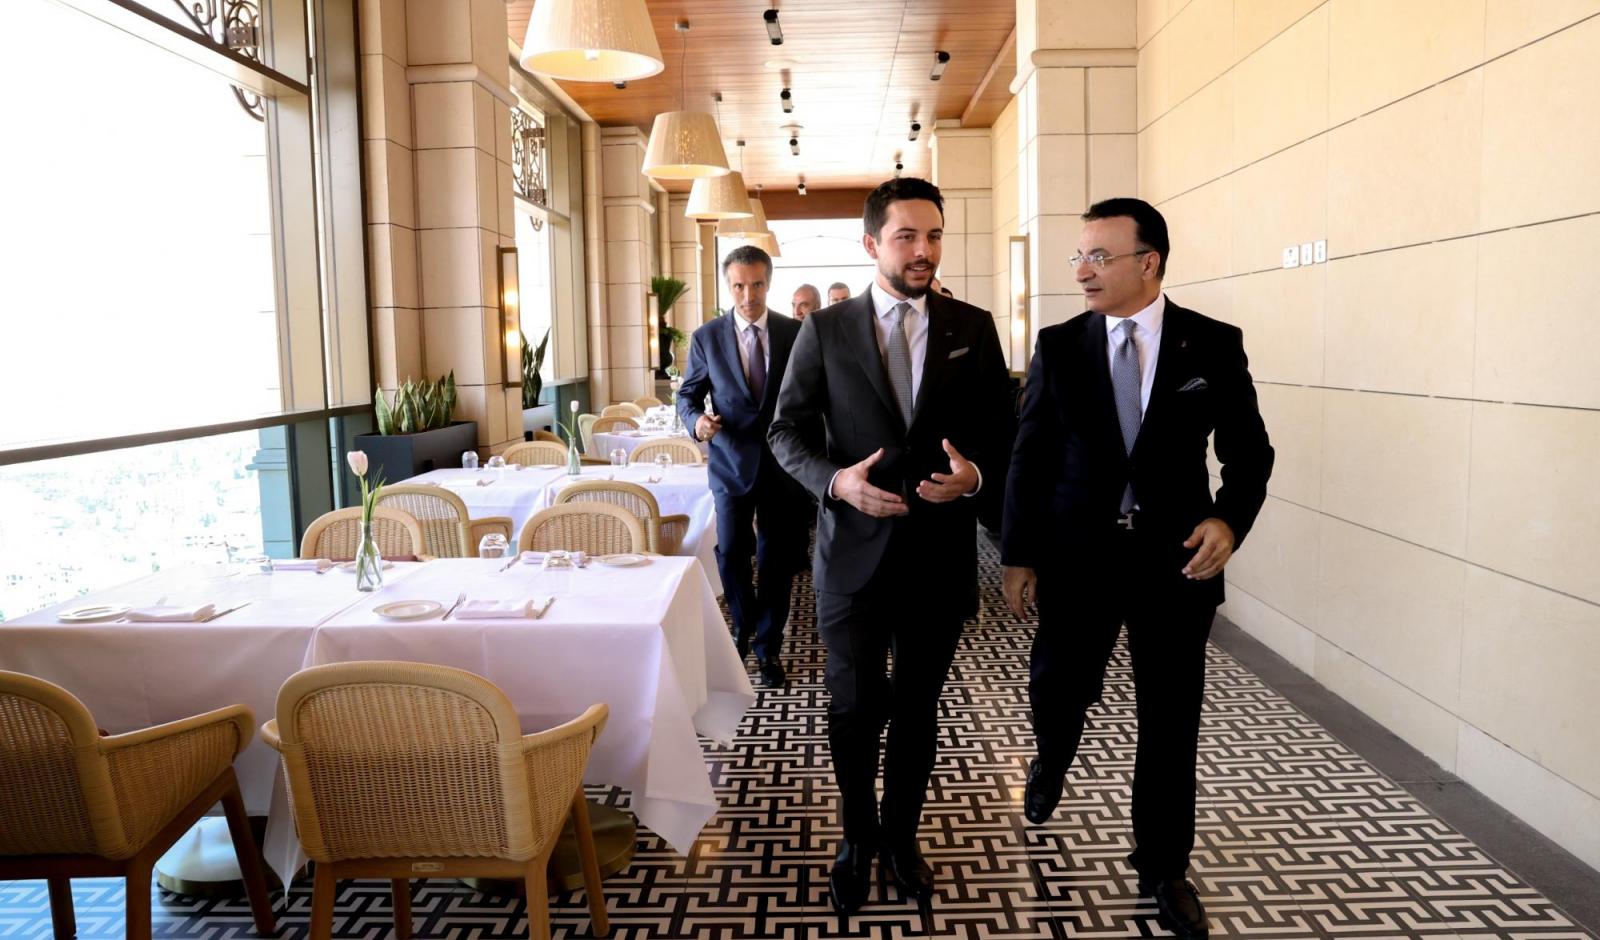 Deputising for King, Crown Prince inaugurates Ritz-Carlton Amman